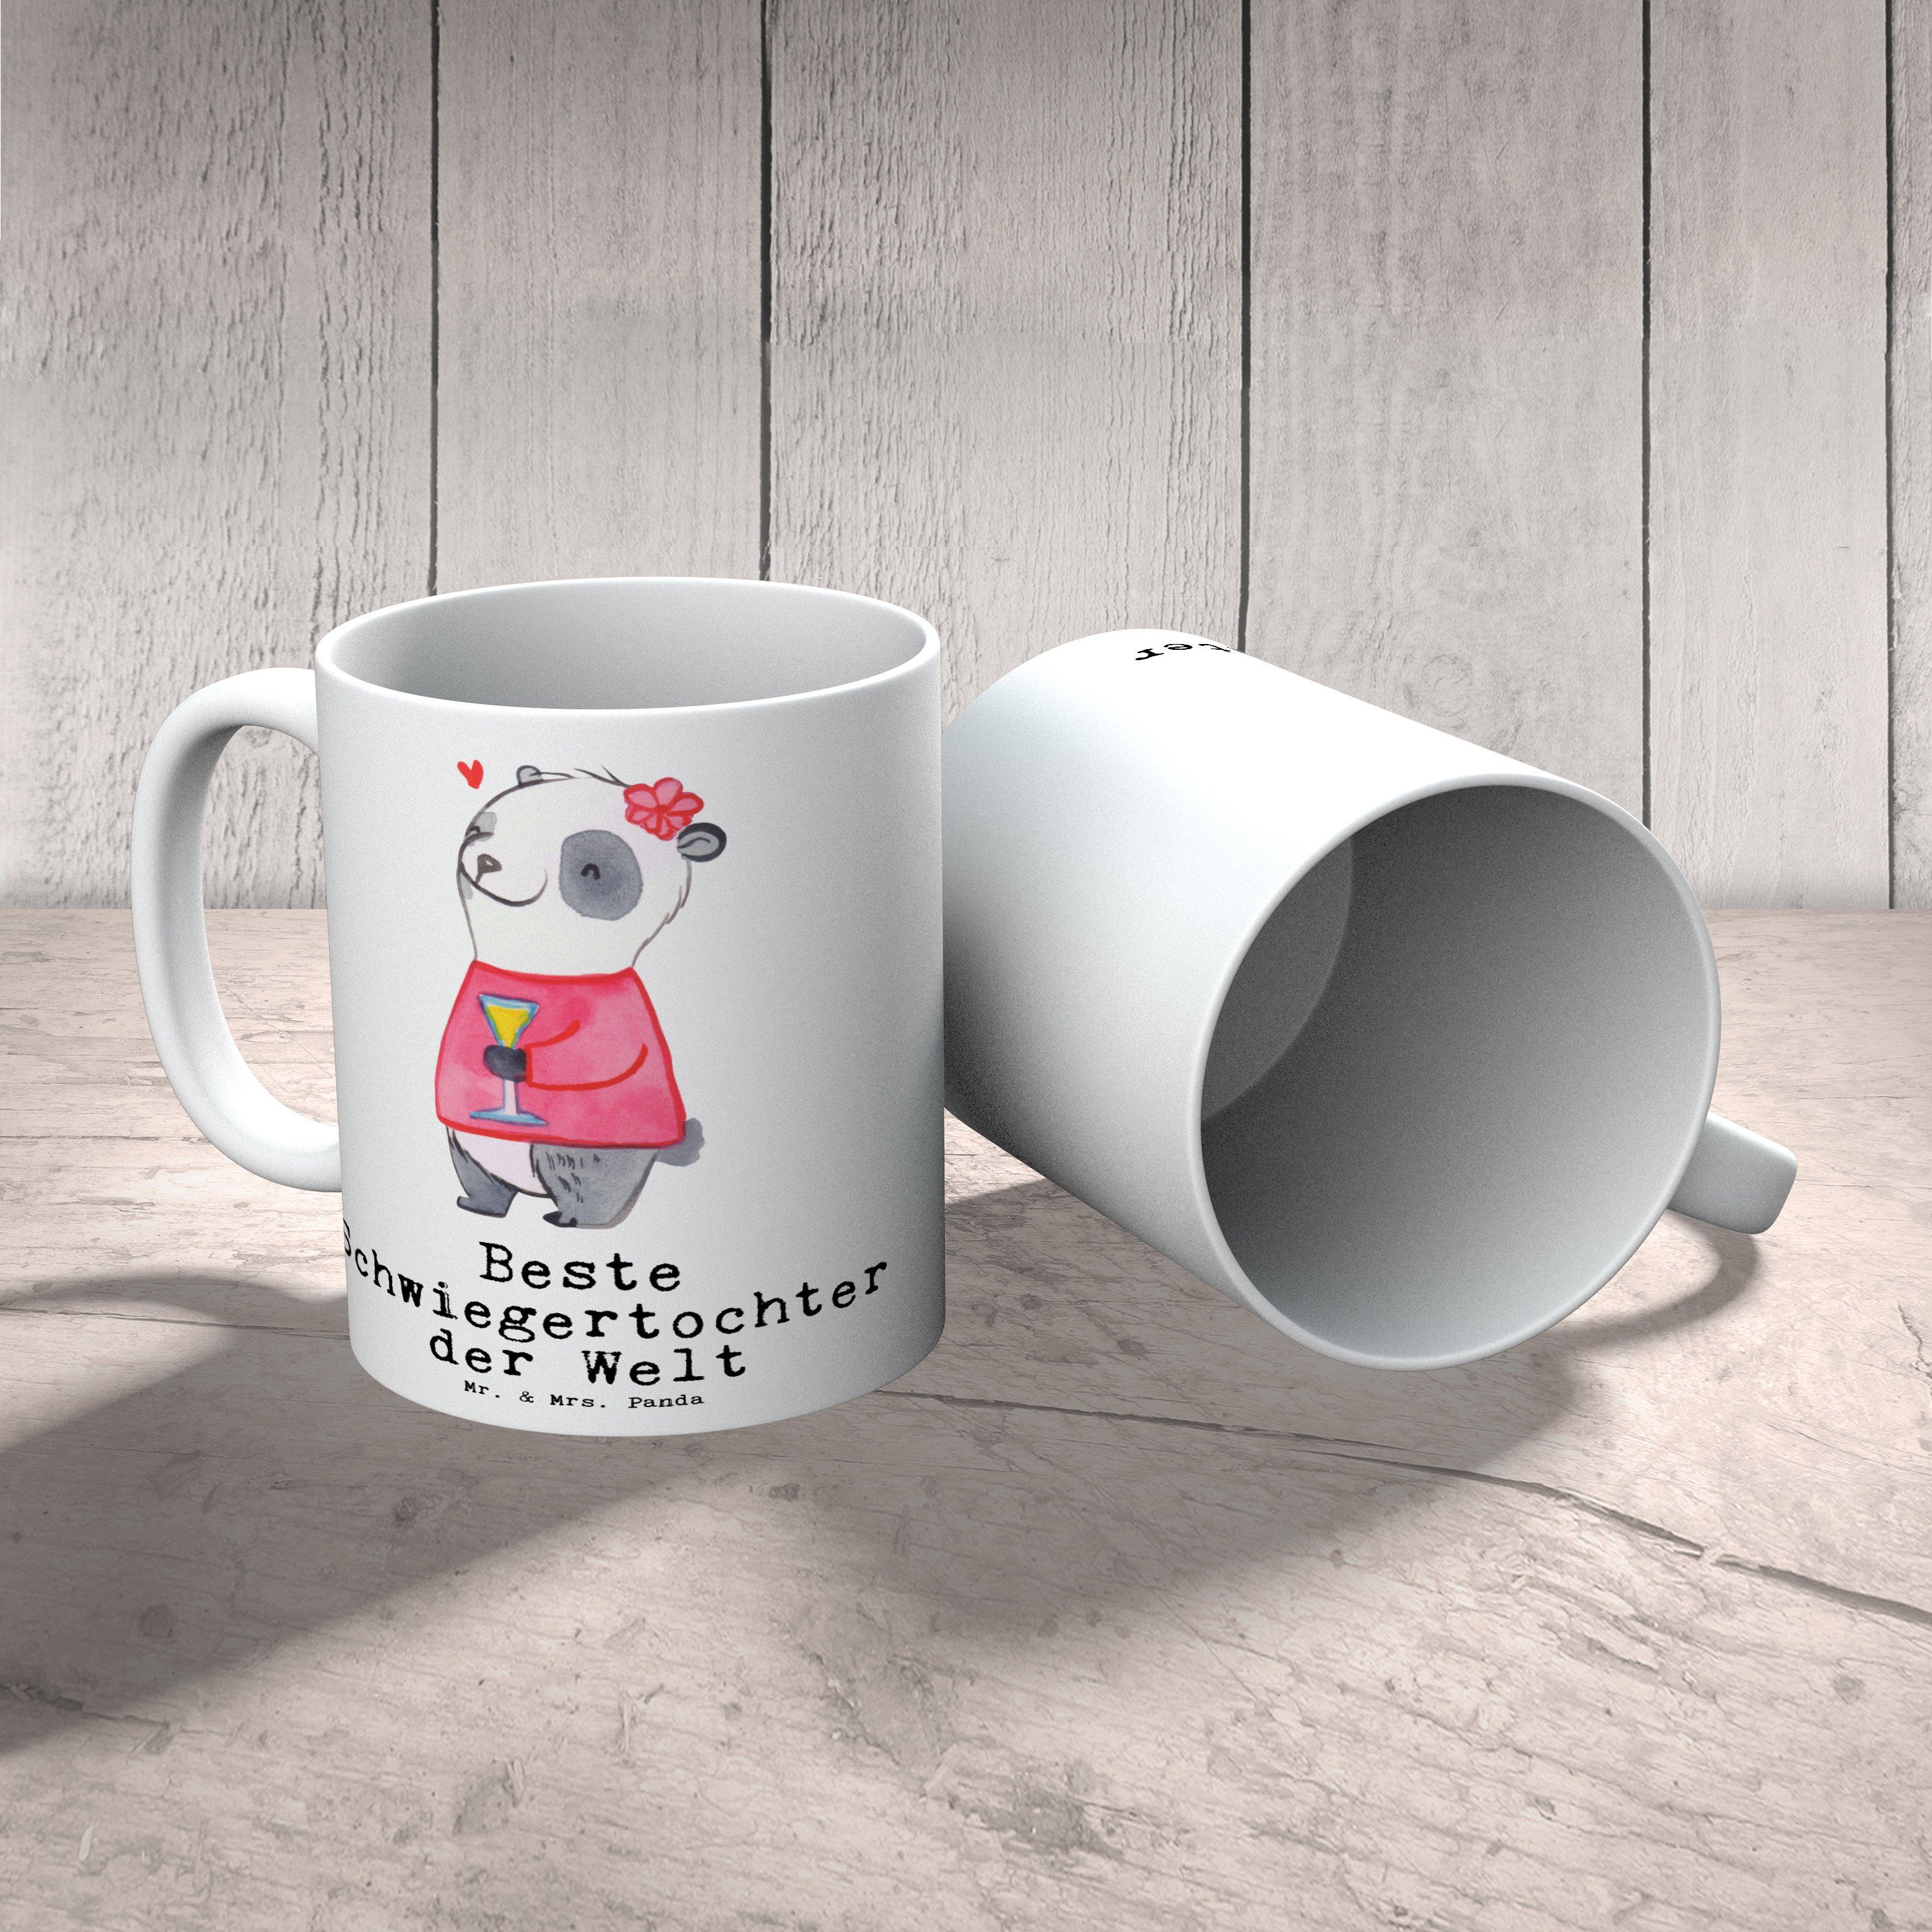 Tee, Becher, Mrs. Panda Panda Mr. & Keramik Weiß Dankeschön, - Tasse Kaffeetasse, Freude machen, Geschenkidee, Schenken, Schwiegertochter der Geschenk, Welt - Kaffeebecher, Beste